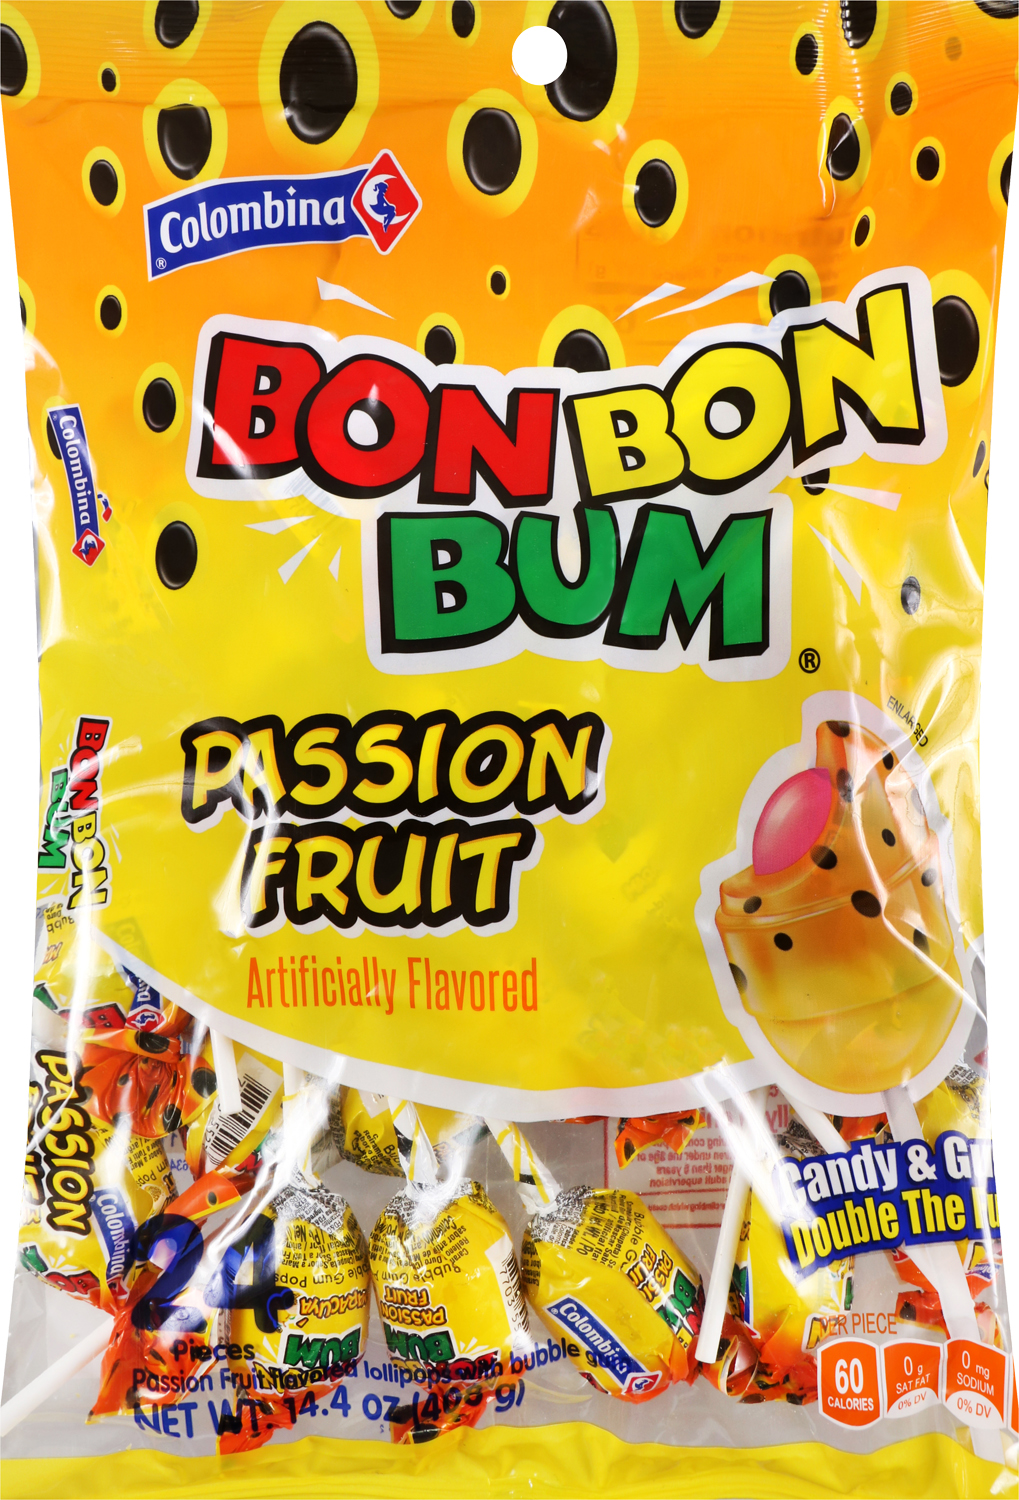 Bon bon bum passion fruit lollipops 24ct